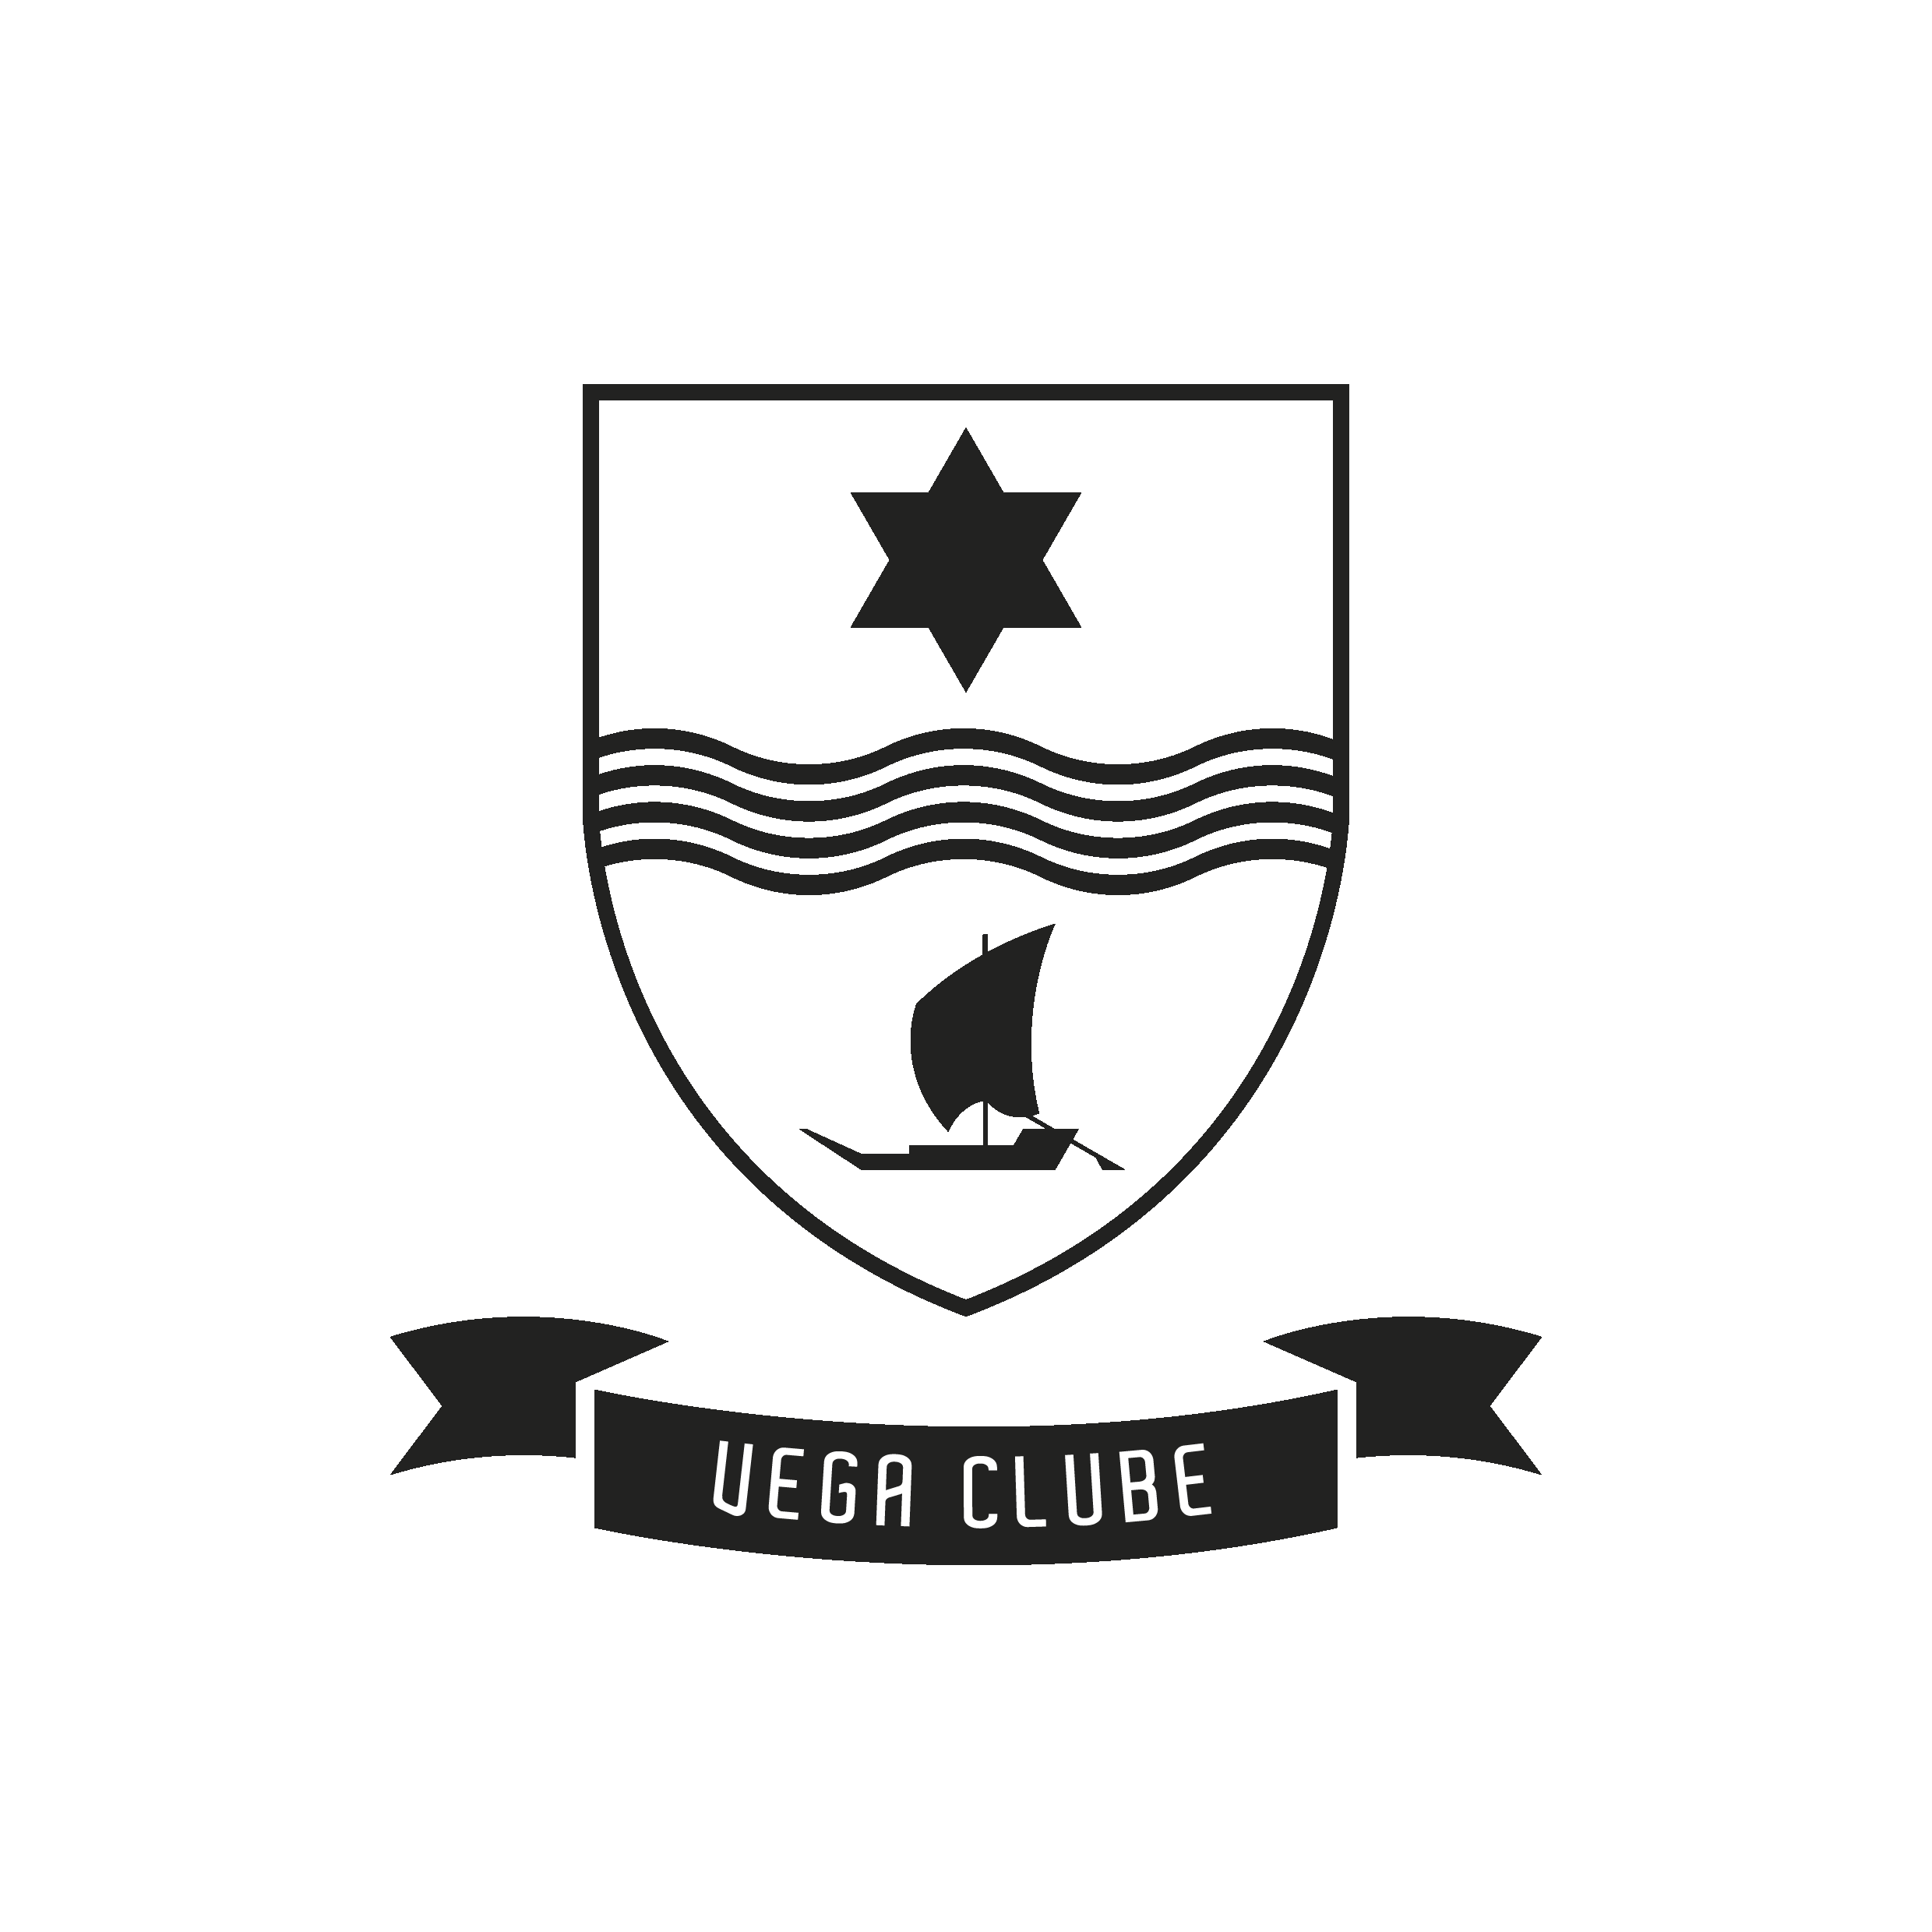 Vega Clube